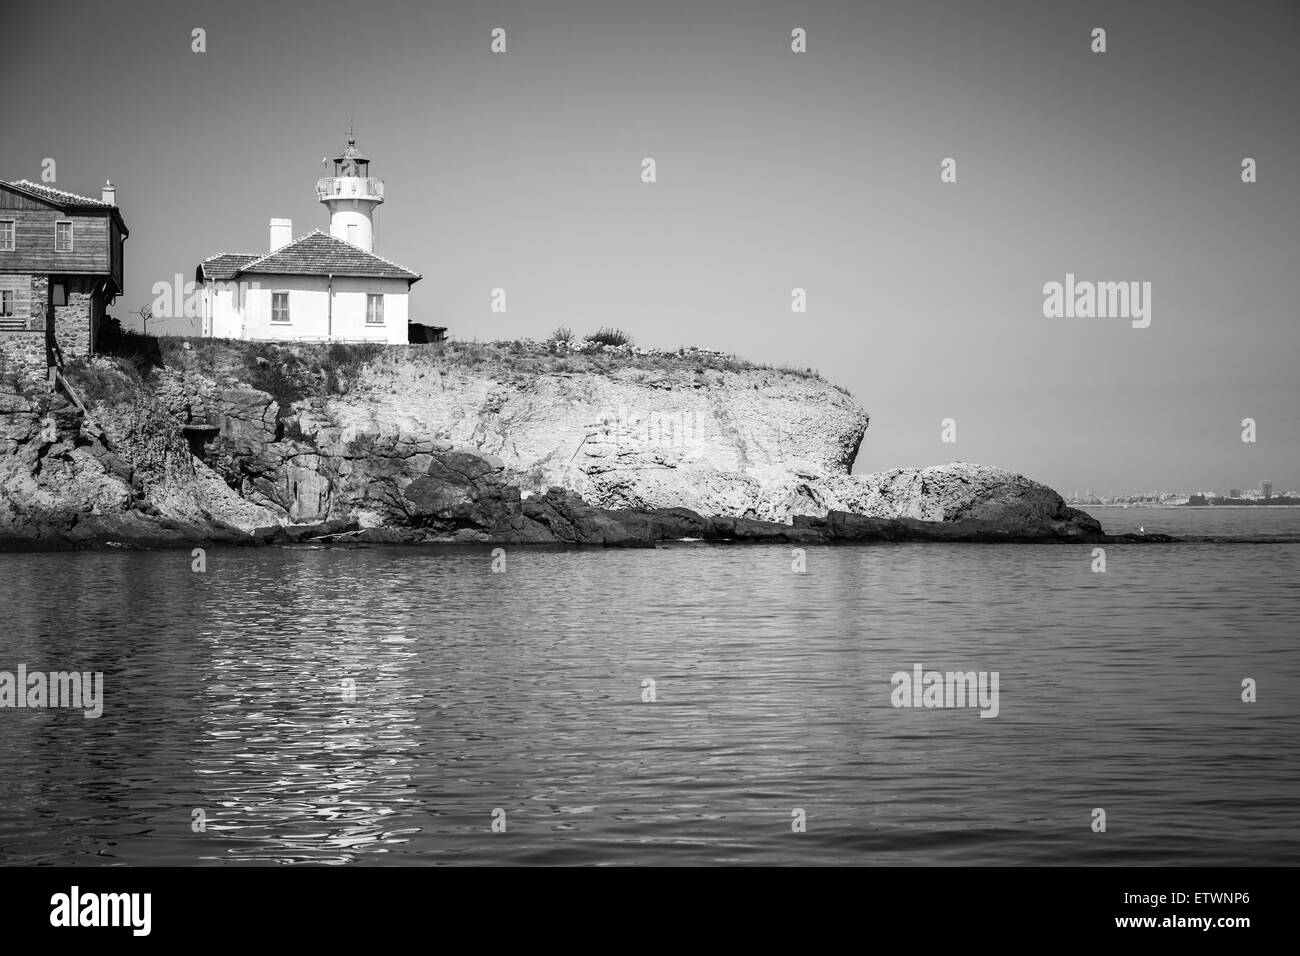 Bâtiments en bois blanc et le phare sur l'île Ste Anastasie. La mer Noire, en Bulgarie. Photo monochrome Banque D'Images